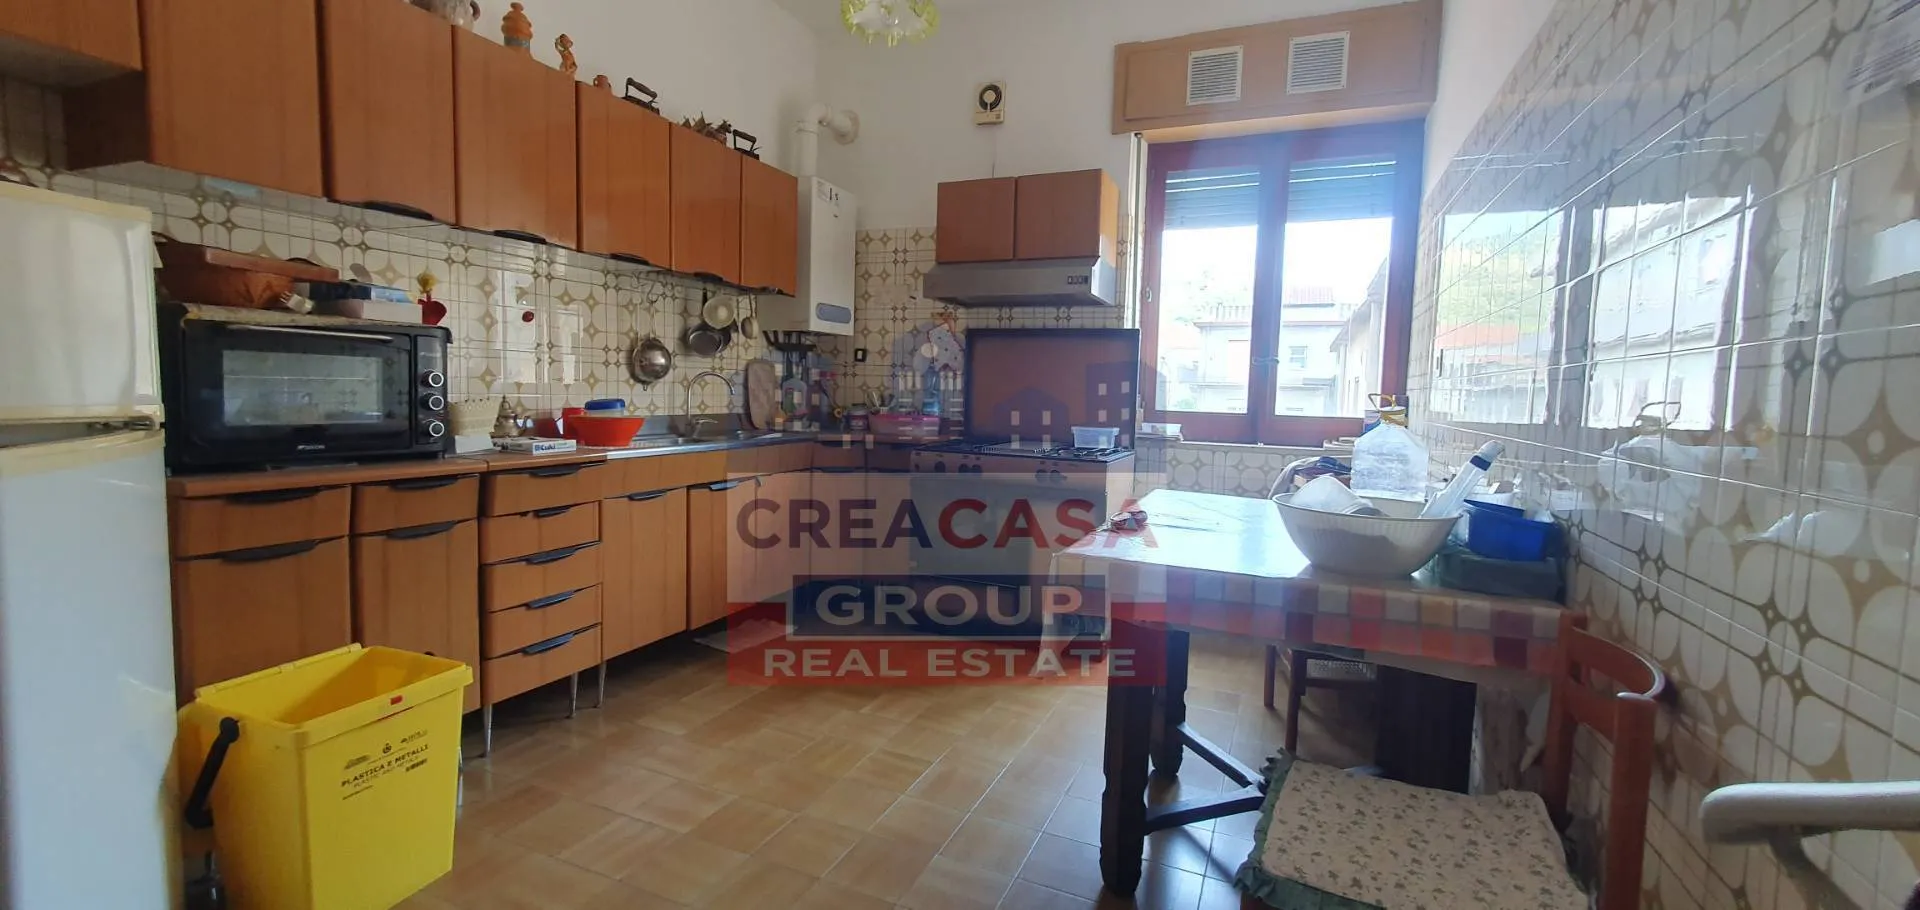 Immagine per Appartamento in vendita a Francavilla di Sicilia VINCENZO BELLINI